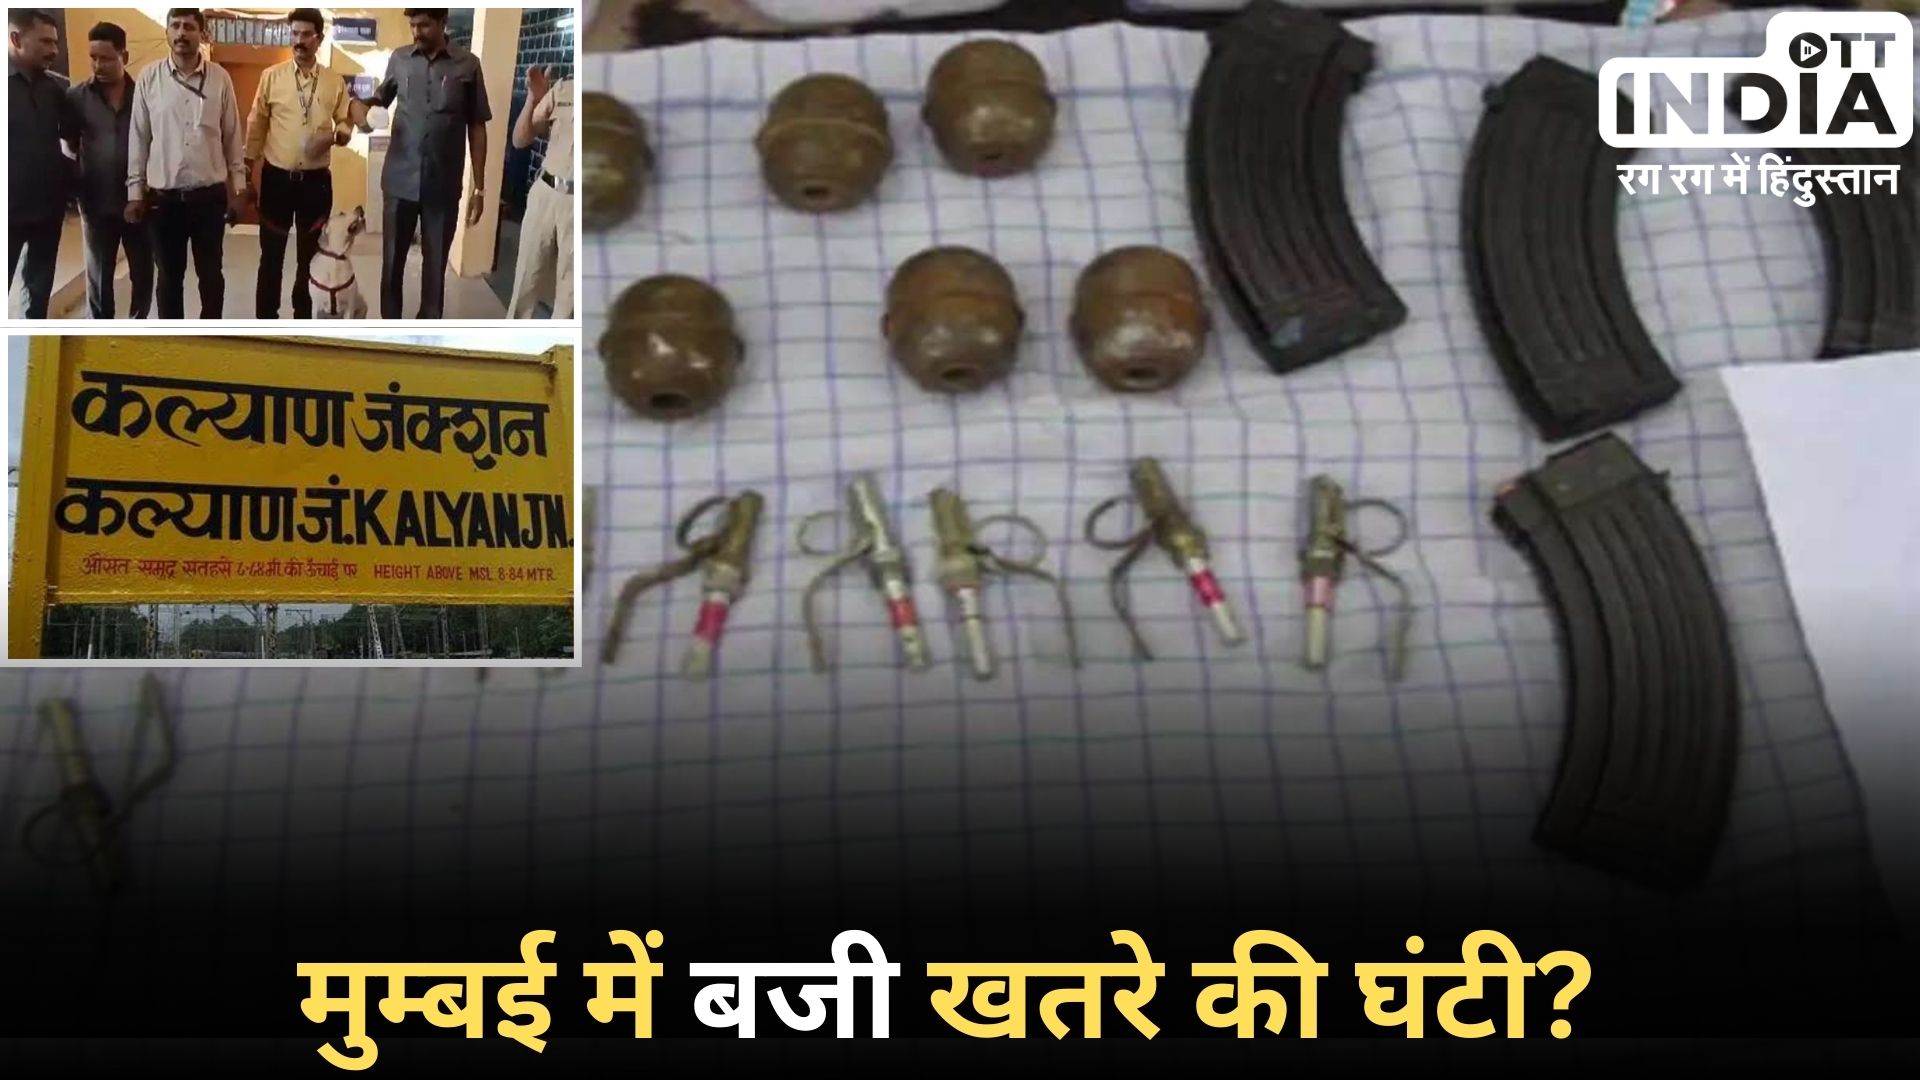 MUMBAI Detonators Found: मुंबई के कल्याण रेलवे स्टेशन के पास मिले 54 डेटोनेटर, क्या थी साजिश?